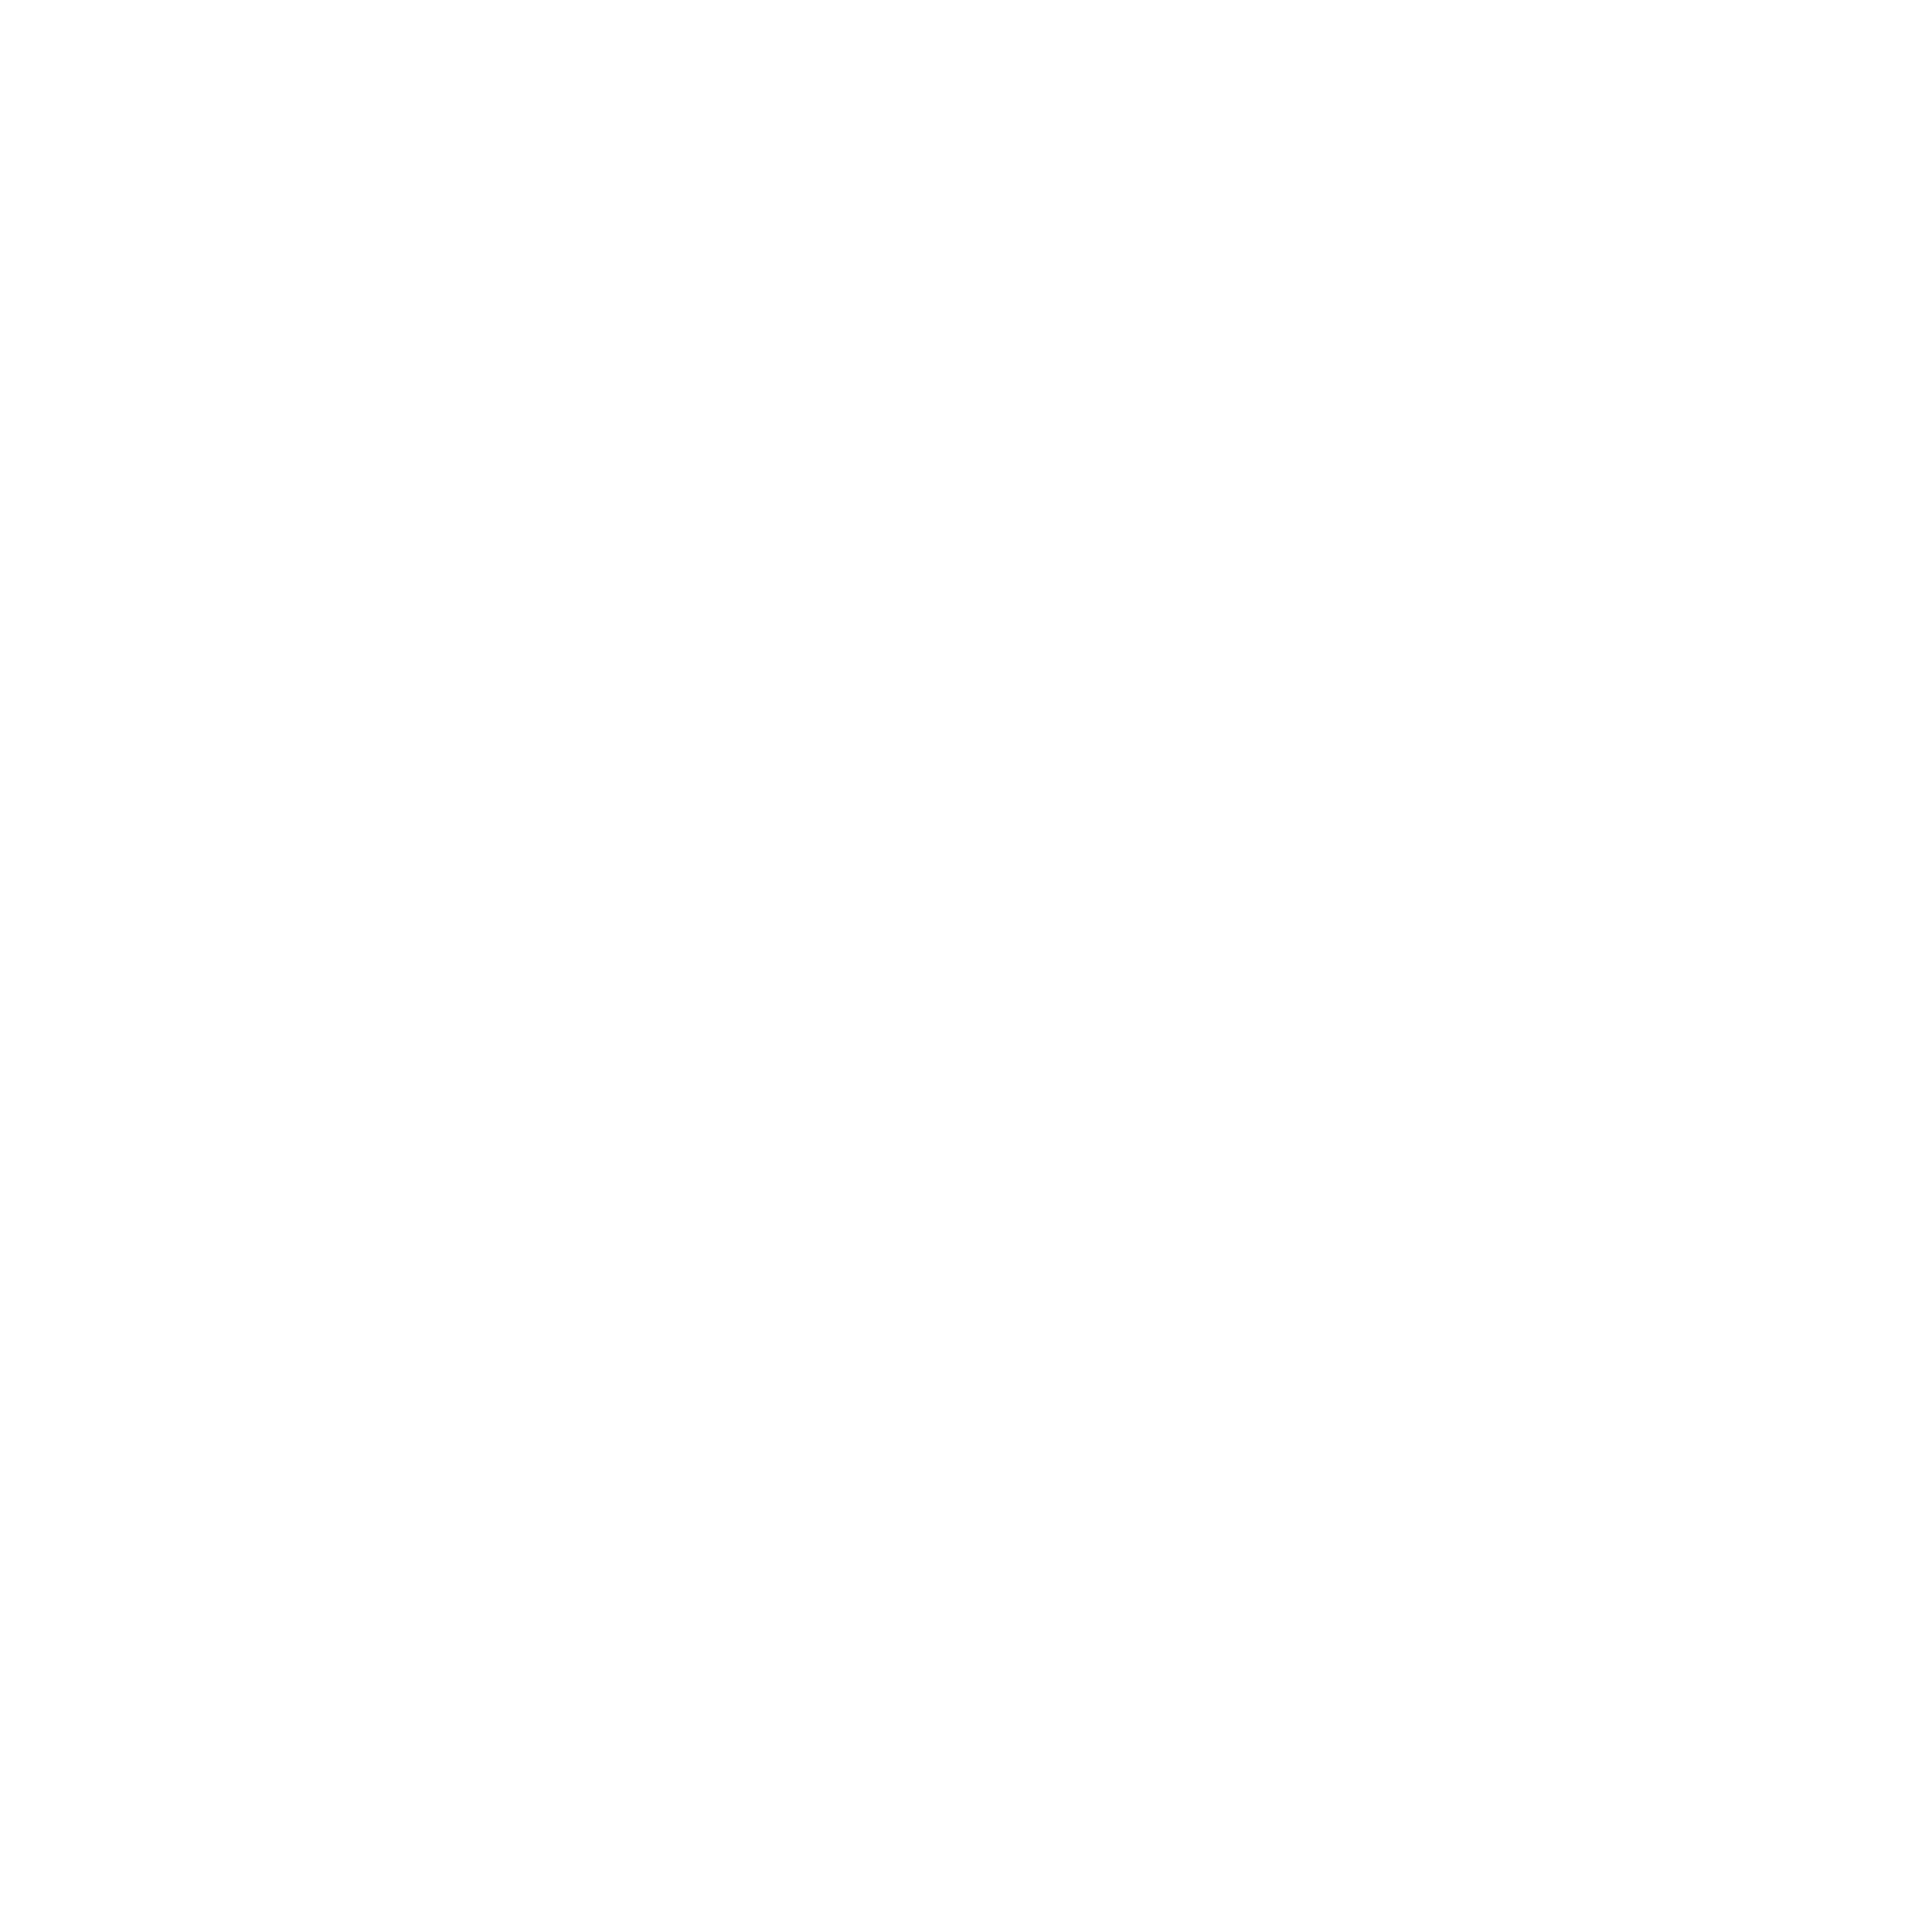 College Press